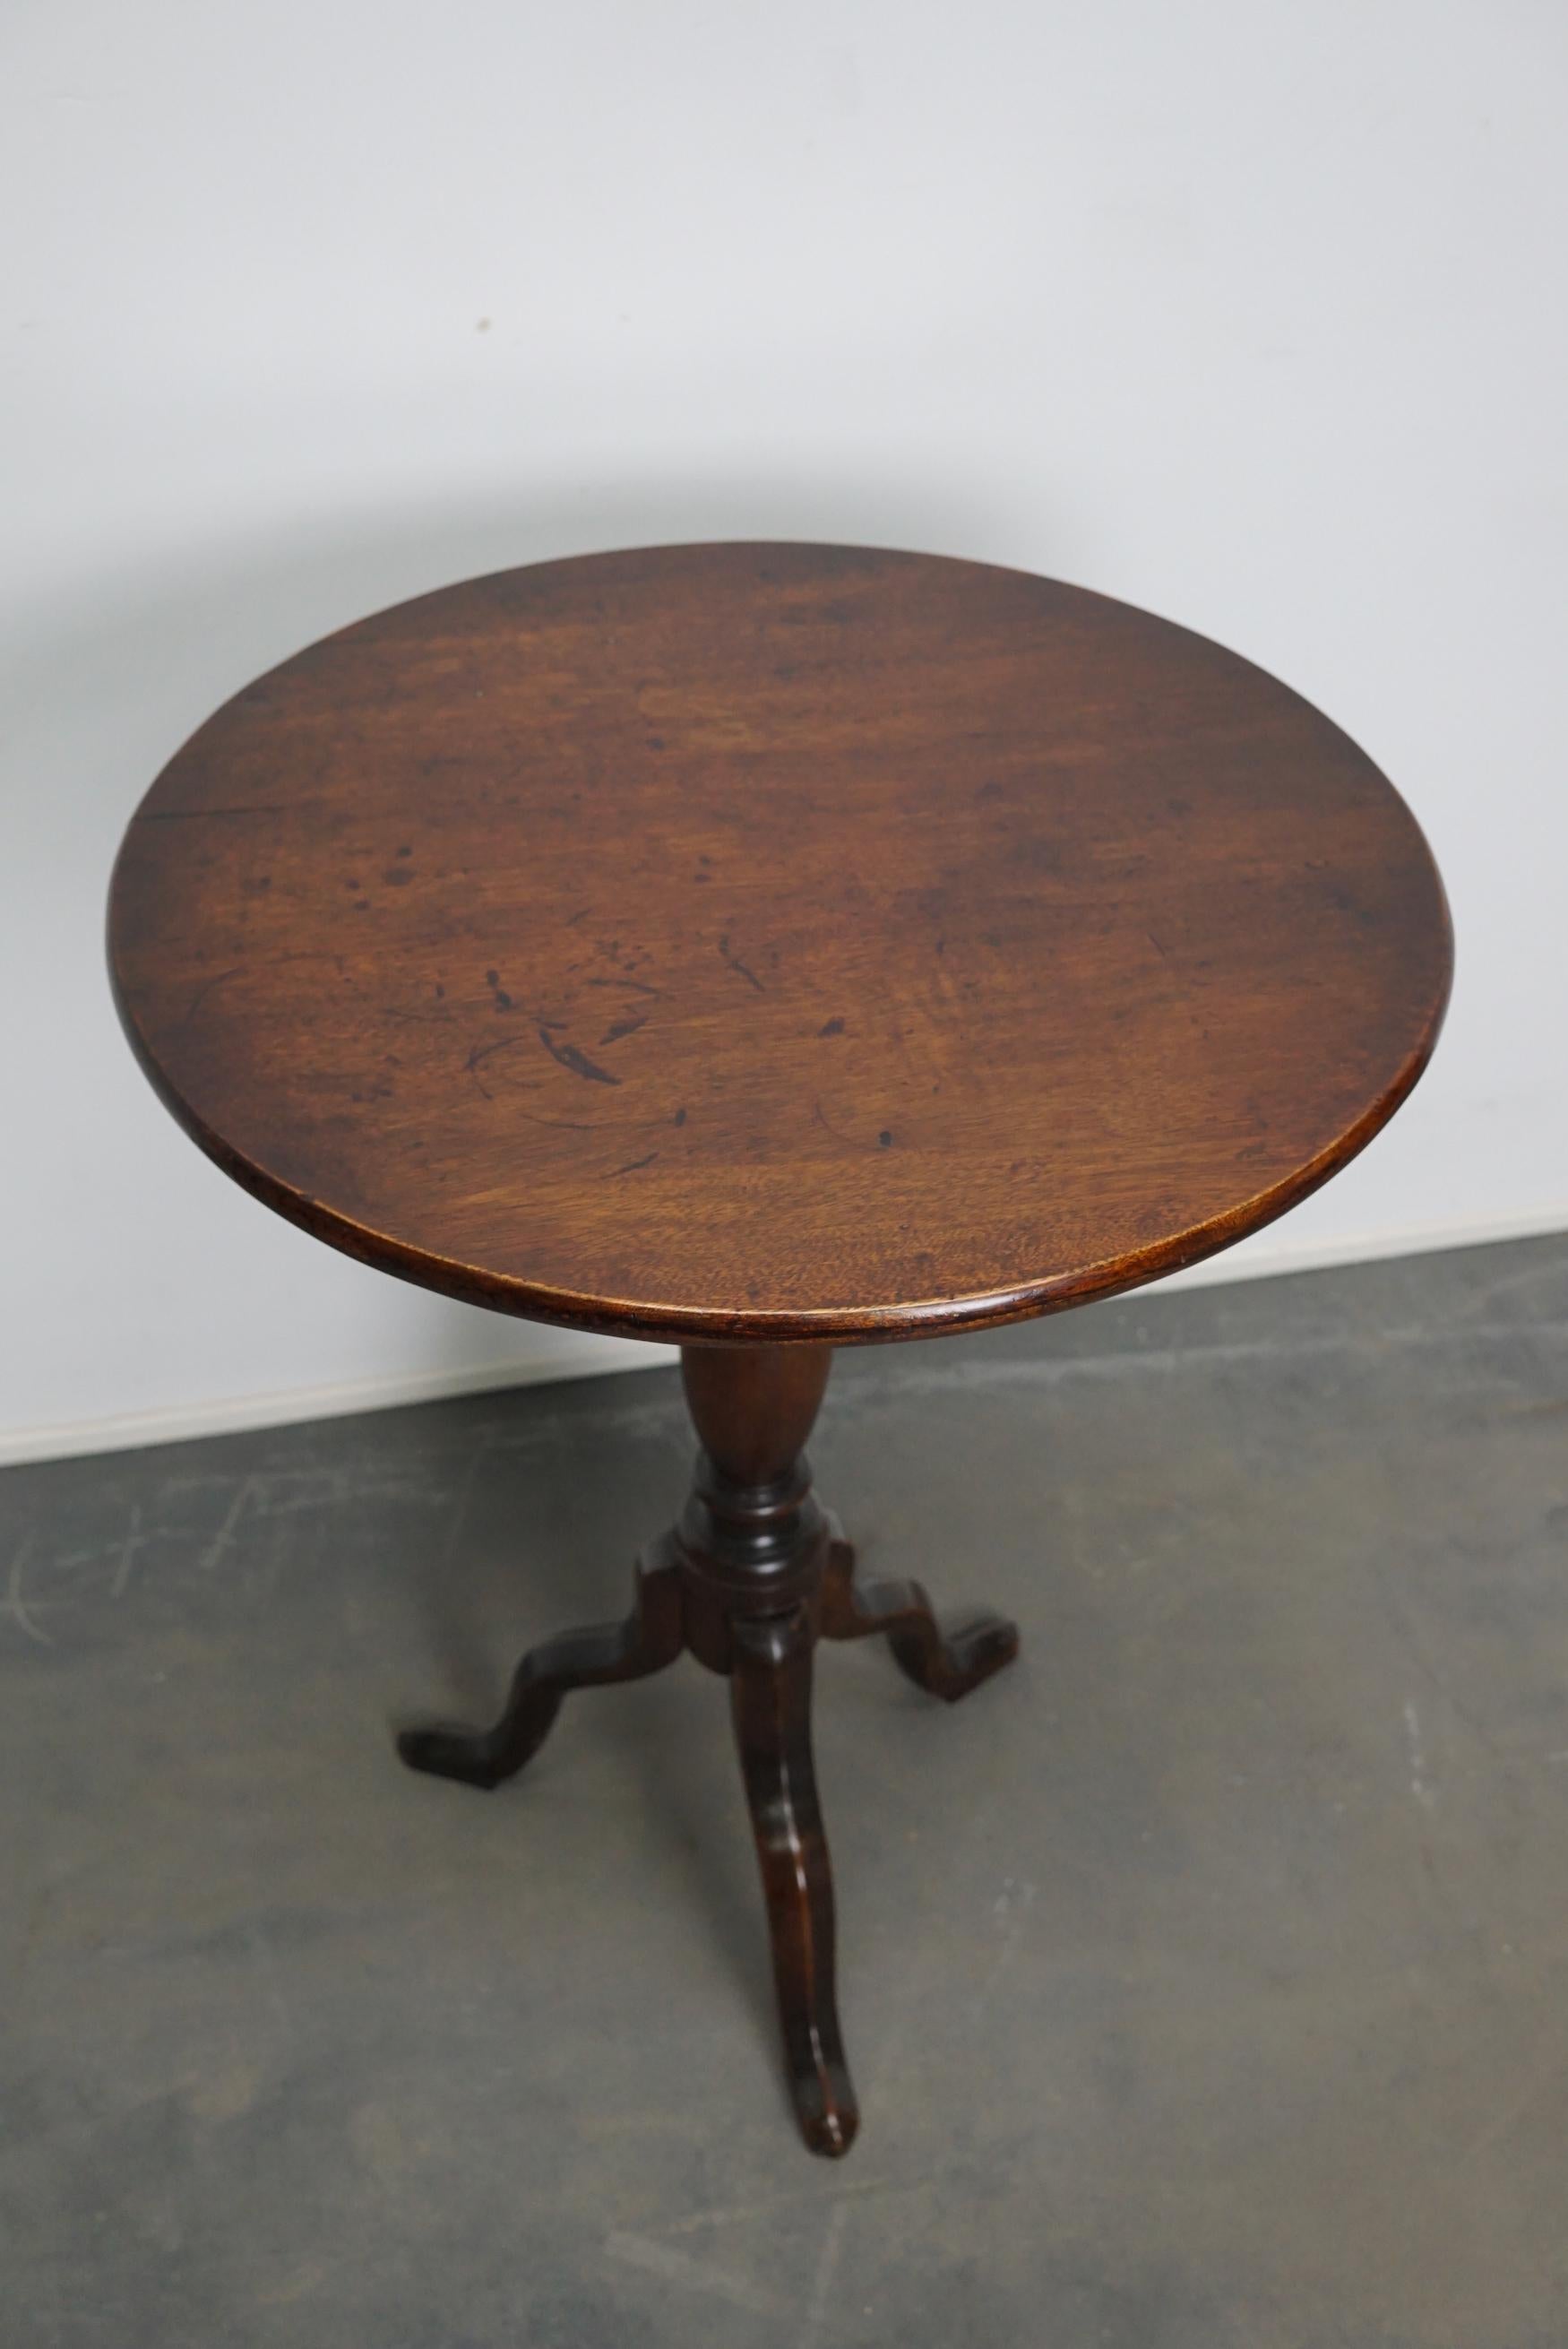 Schöner Weintisch aus Mahagoni aus dem 18. Jahrhundert. Dieser Tisch hat eine kippbare Platte aus massivem Mahagoni auf dreibeinigen Beinen. Der Tisch wurde restauriert und befindet sich in einem sehr guten Zustand.